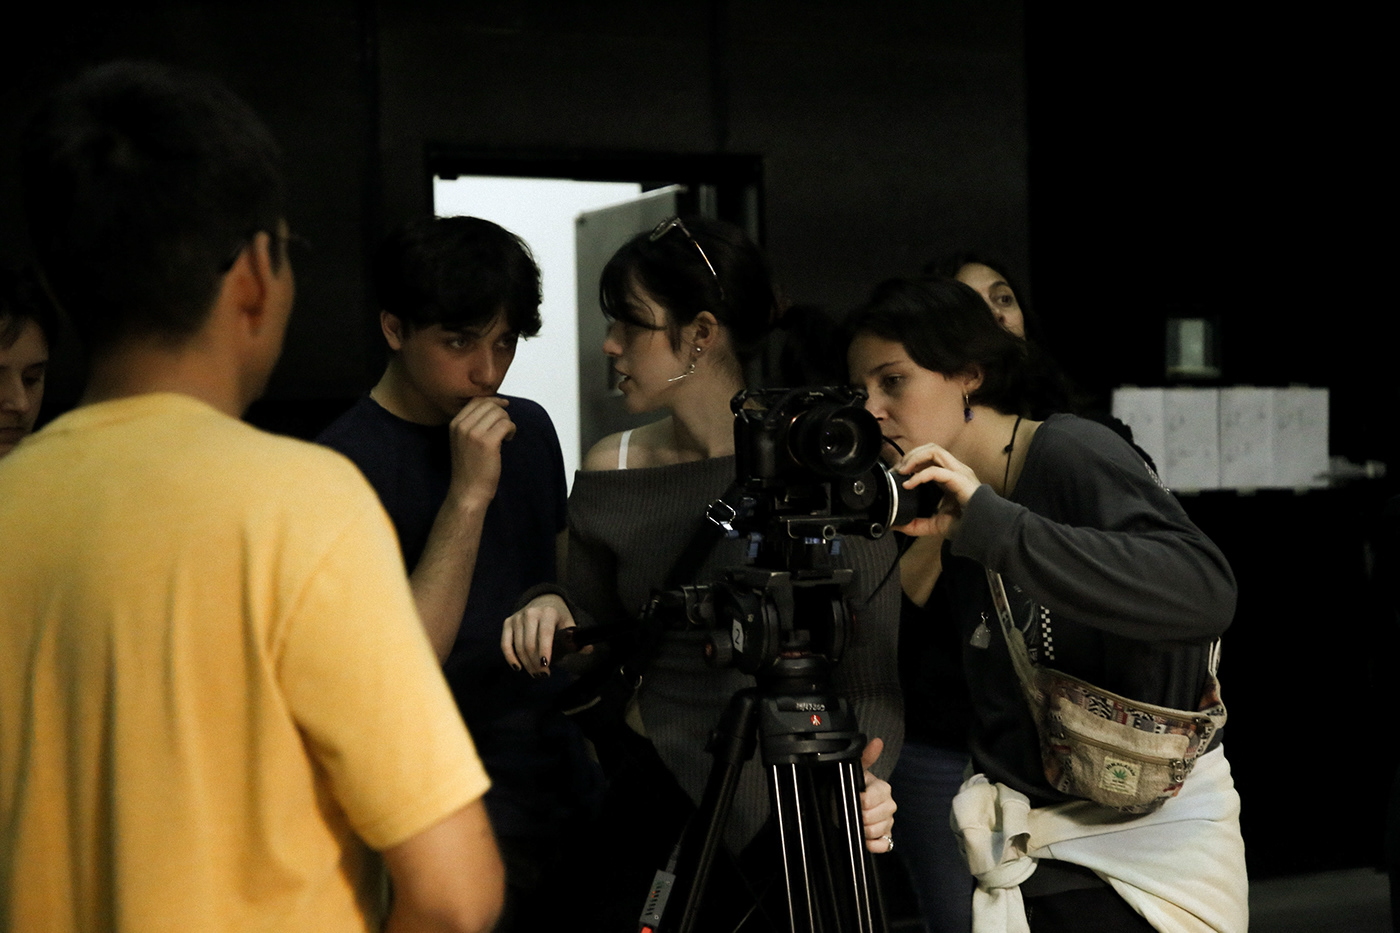 arte cuadro vermeer cortometraje cine audiovisuales dirección de fotografía dirección de arte